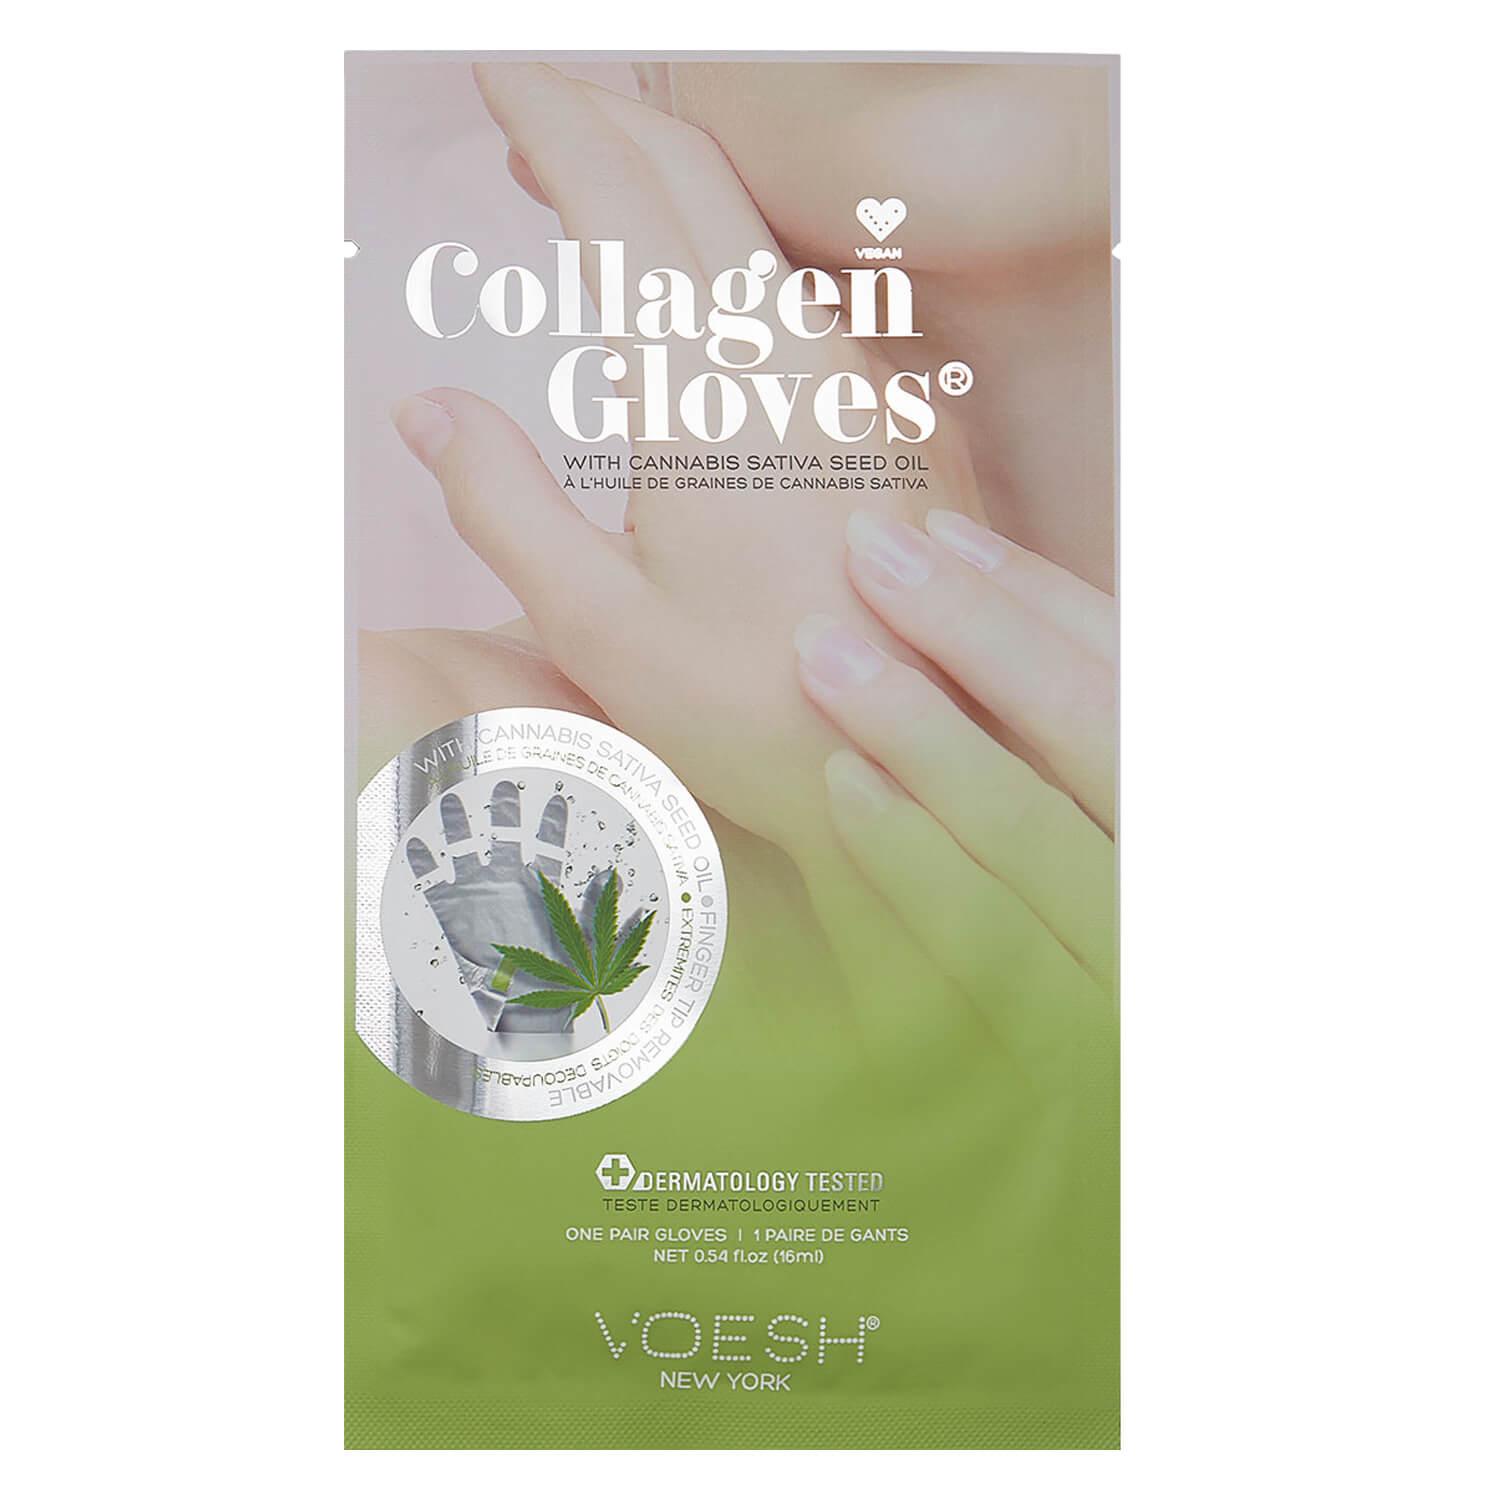 VOESH New York - Collagen Gloves Cannabis Seed Oil